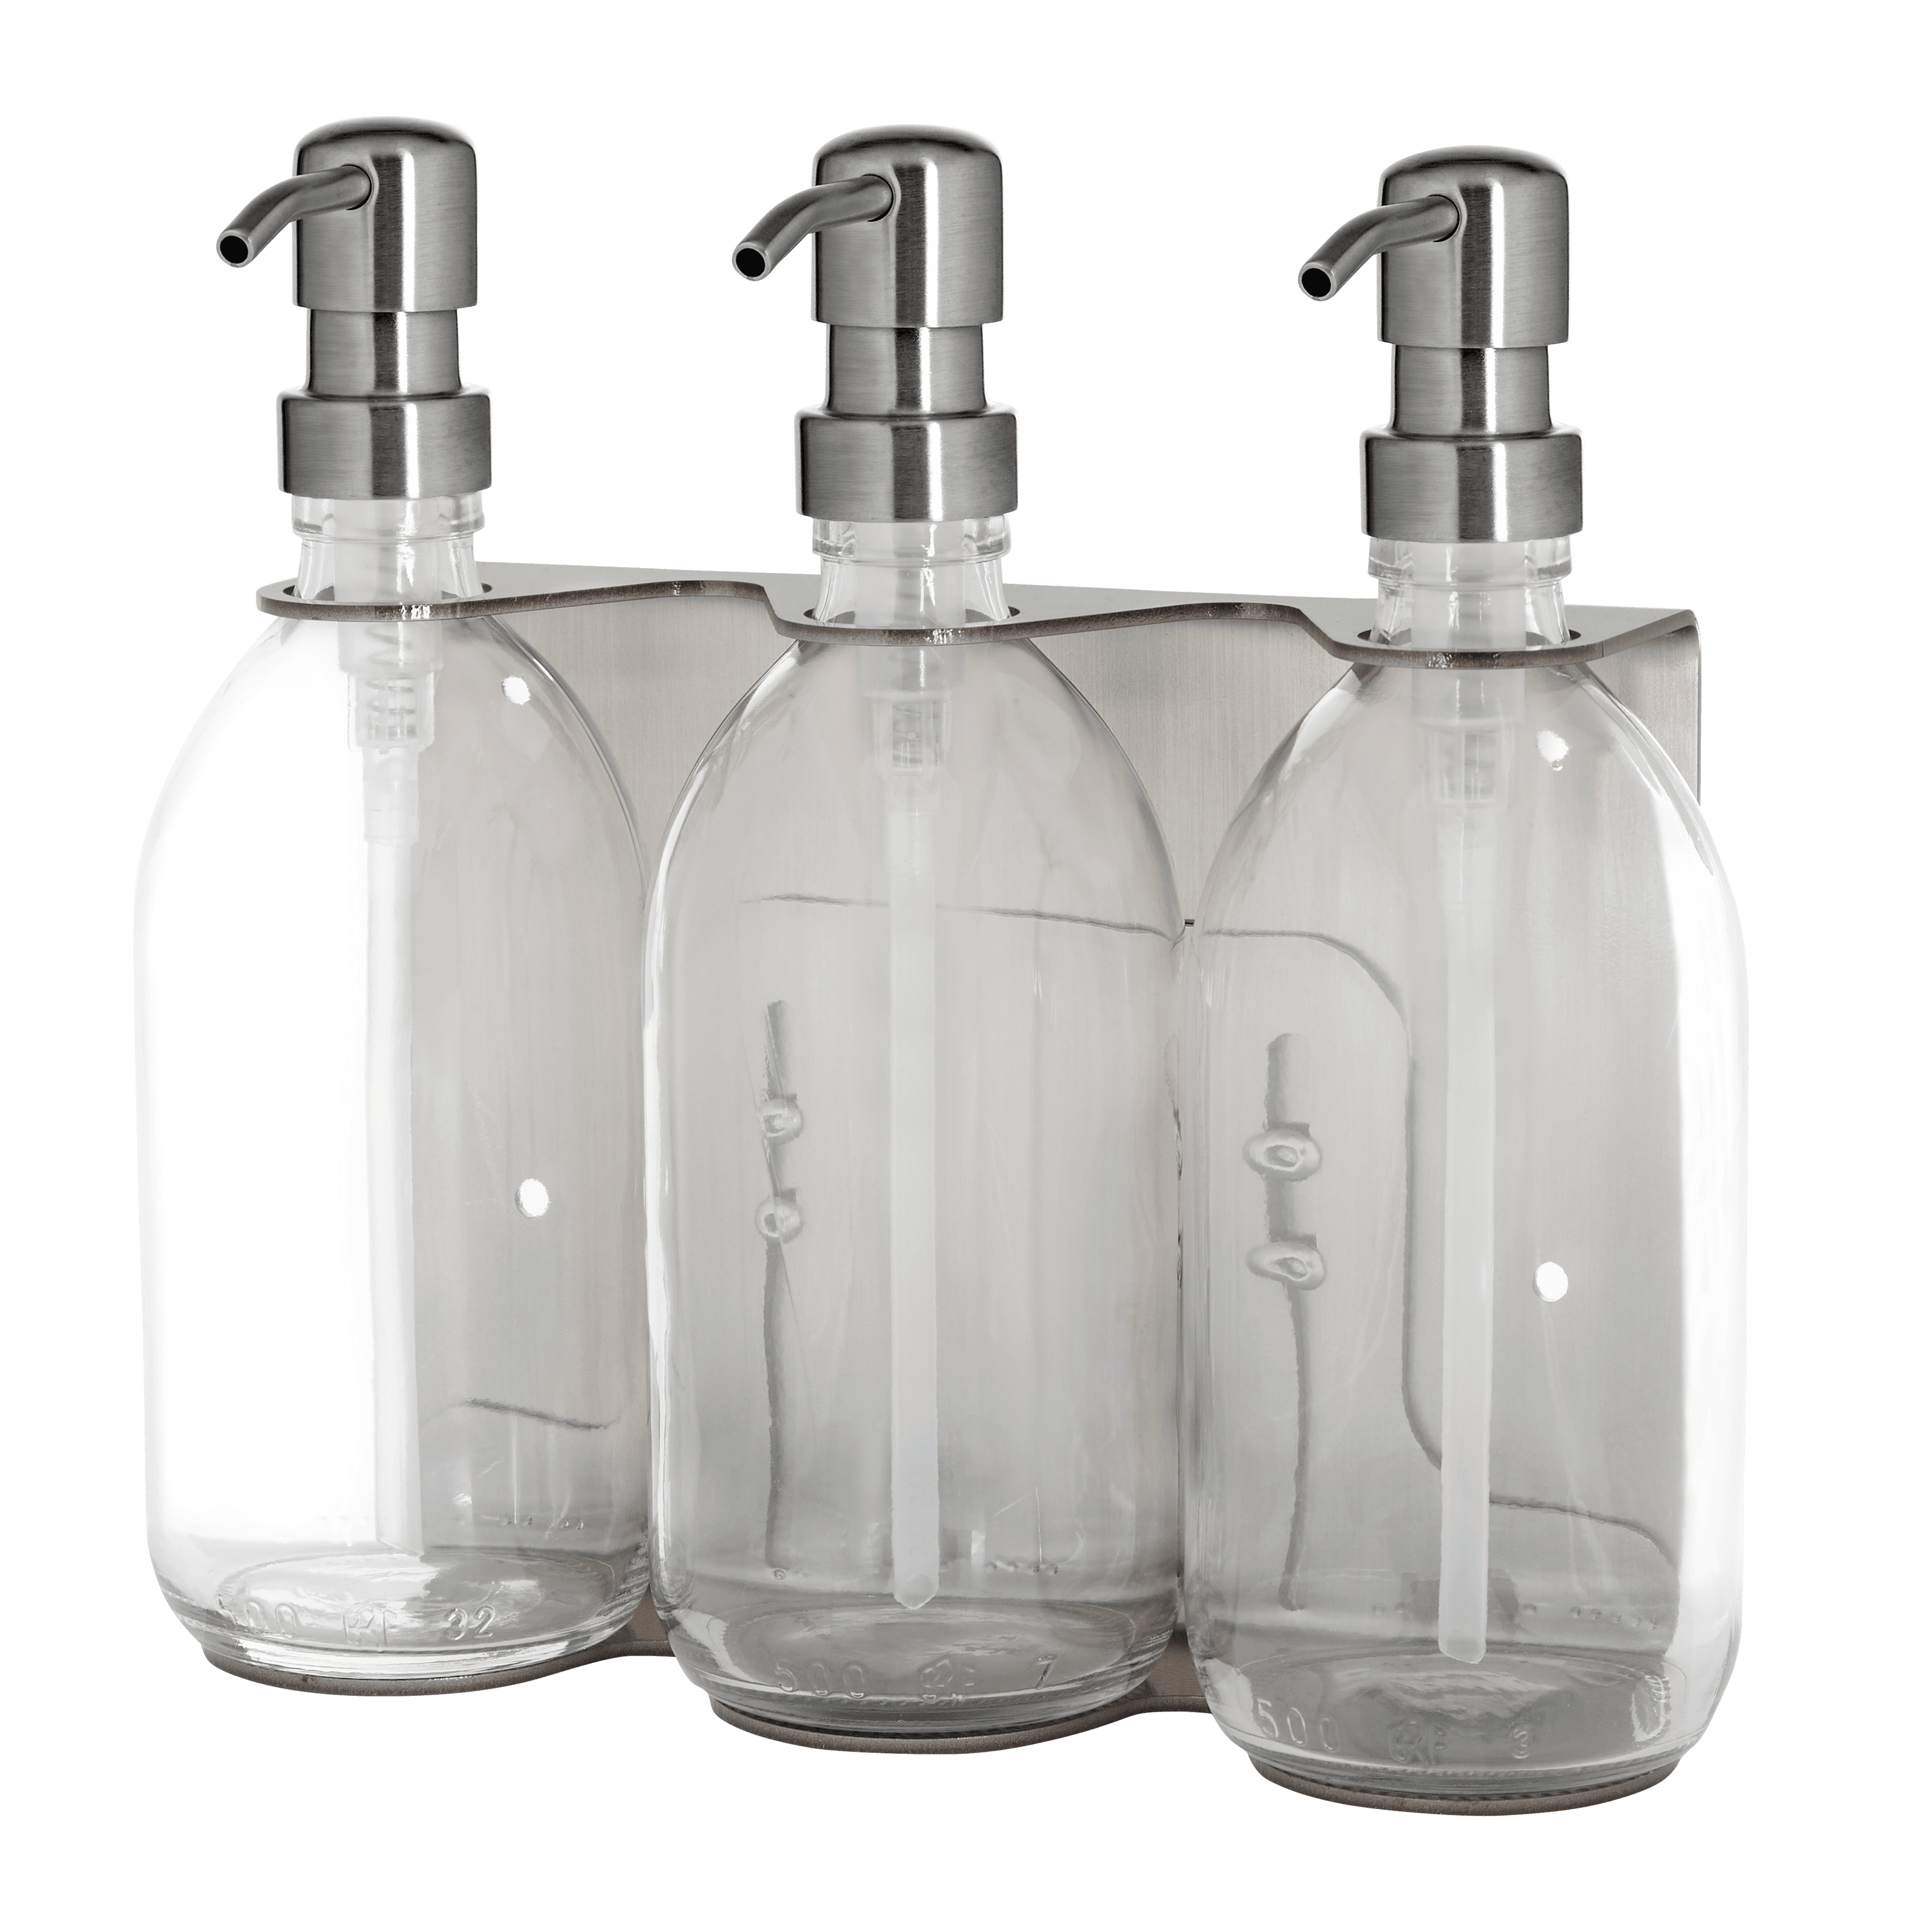 Soporte de pared triple plata satinada con botellas transparentes con bombas de metal plateado